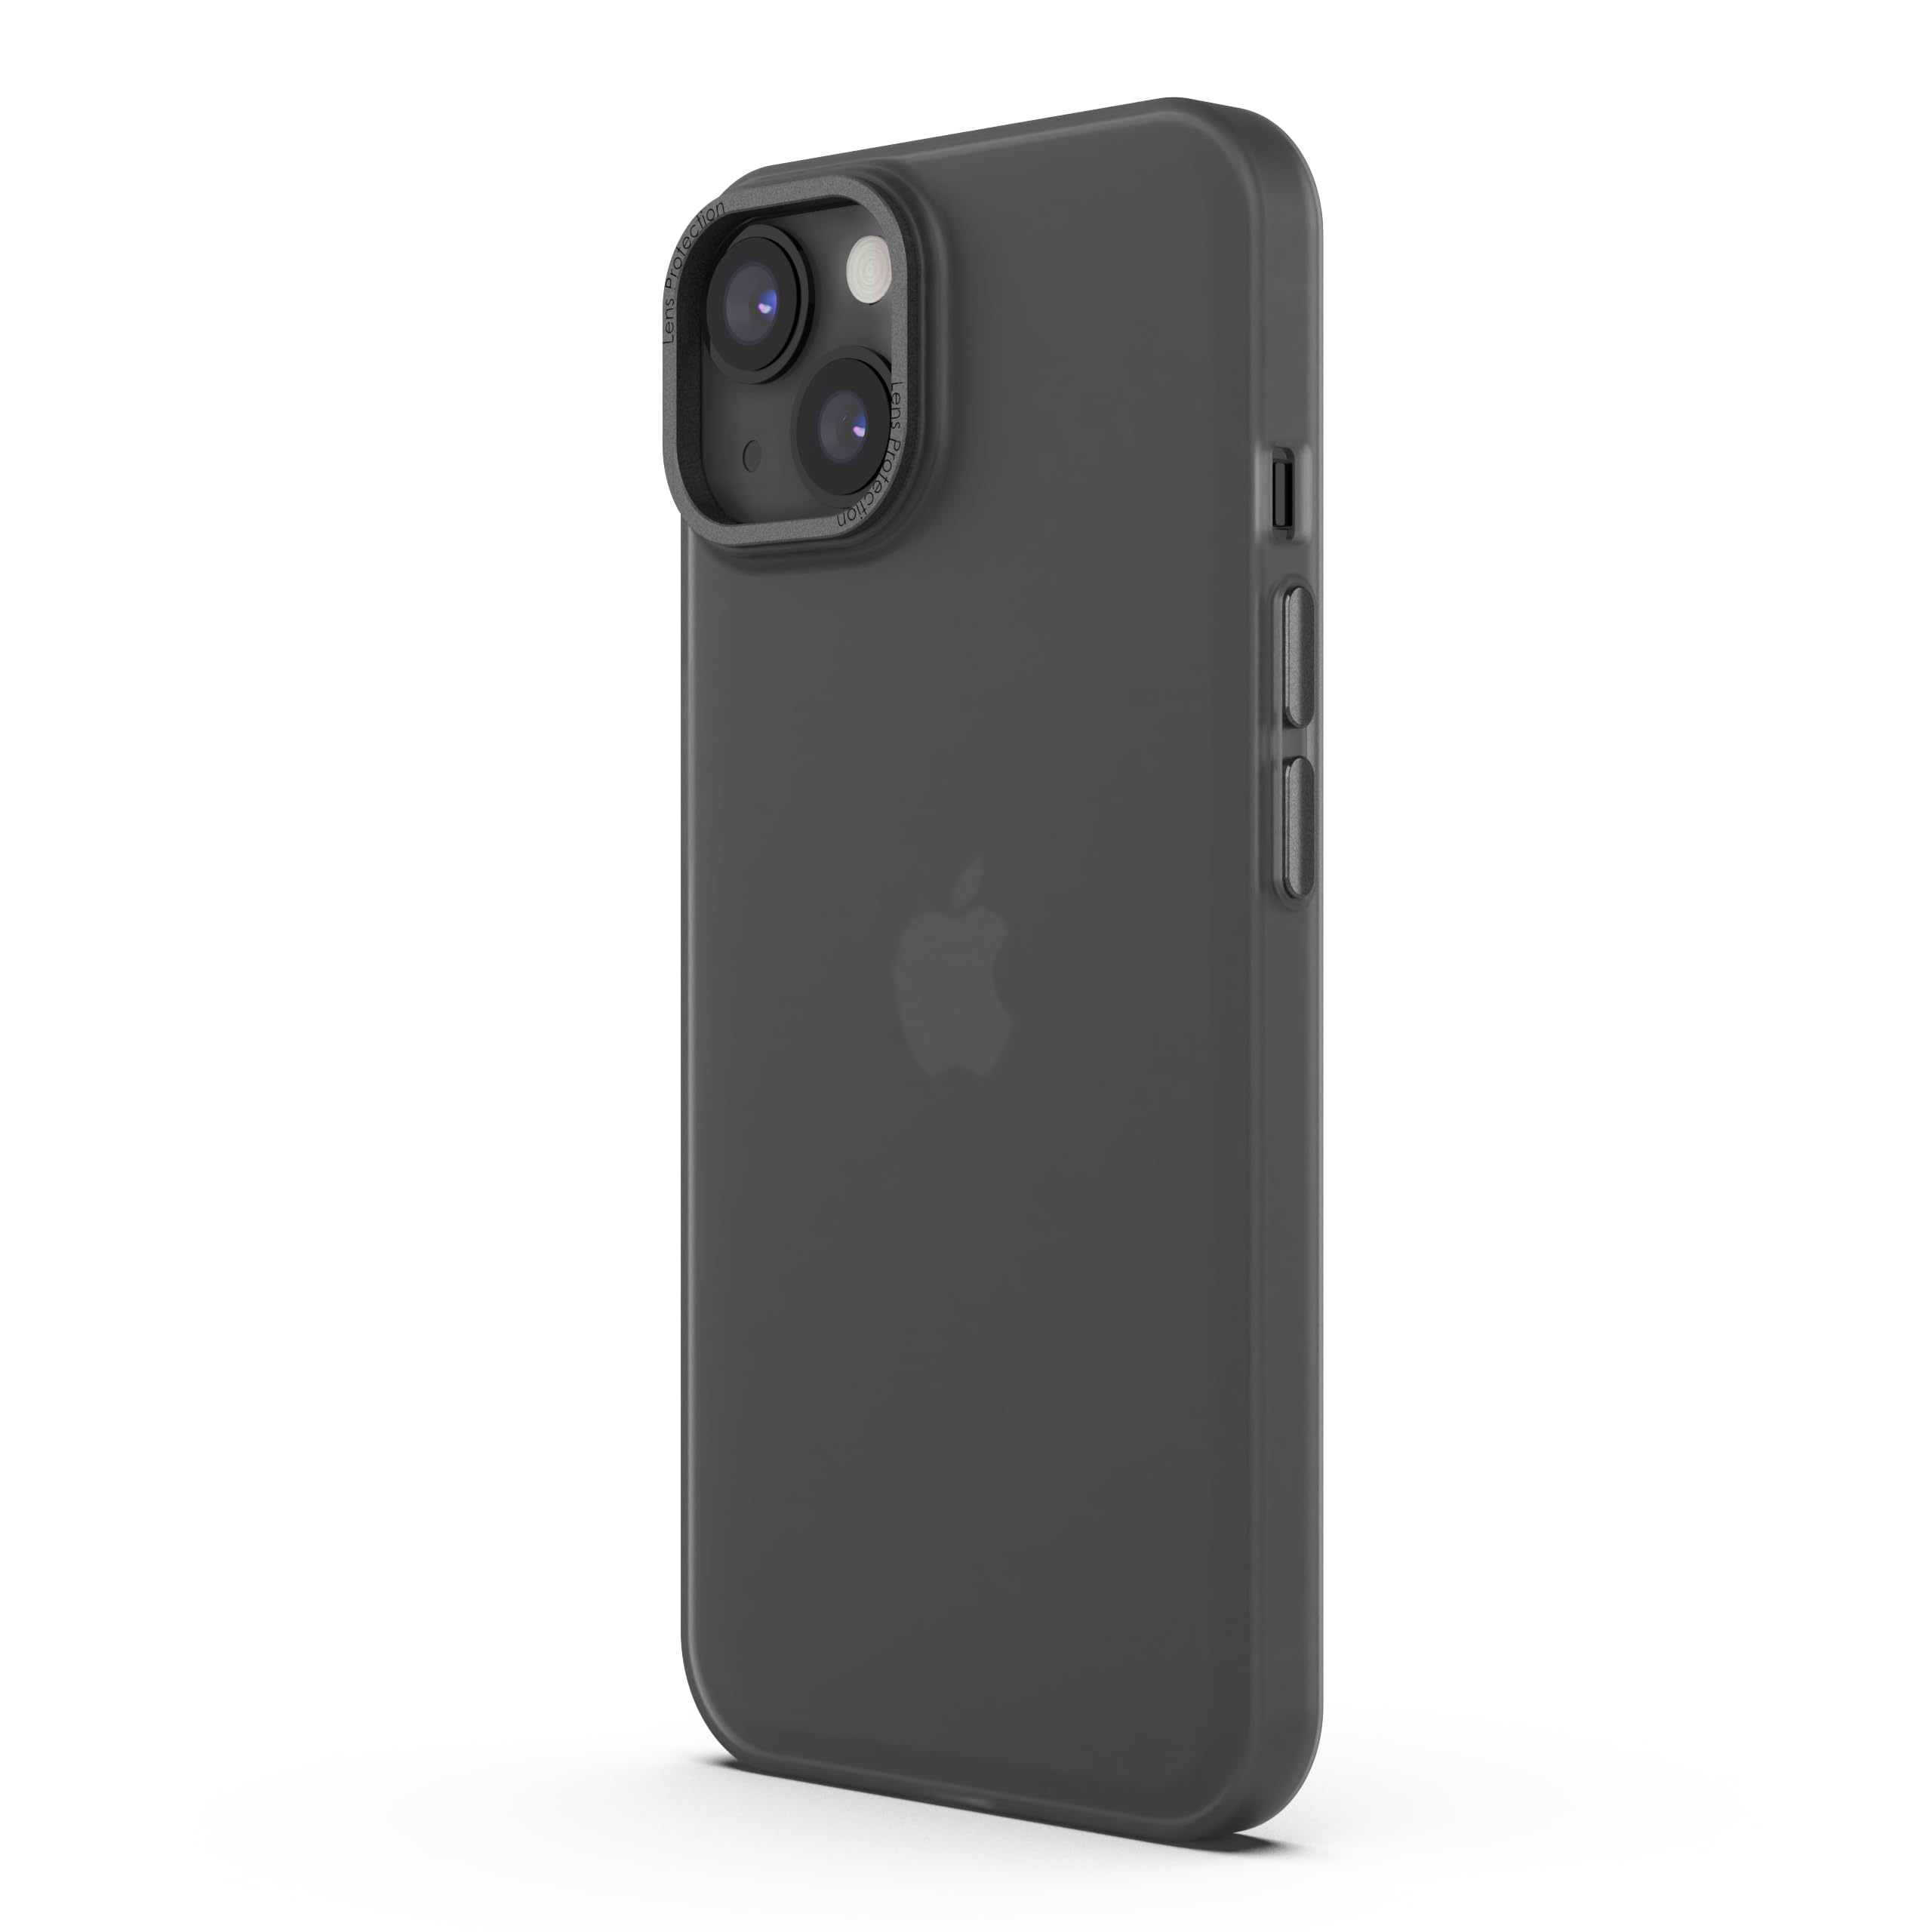 Arktis MR Protect Hülle kompatibel mit iPhone 15 Transparent [Frozen Look] Silikon, Handyhülle, durchsichtige Schutzhülle [Widerstandsfähig] - Rückschale Transluzent [Case Cover] (Dark Smoke)